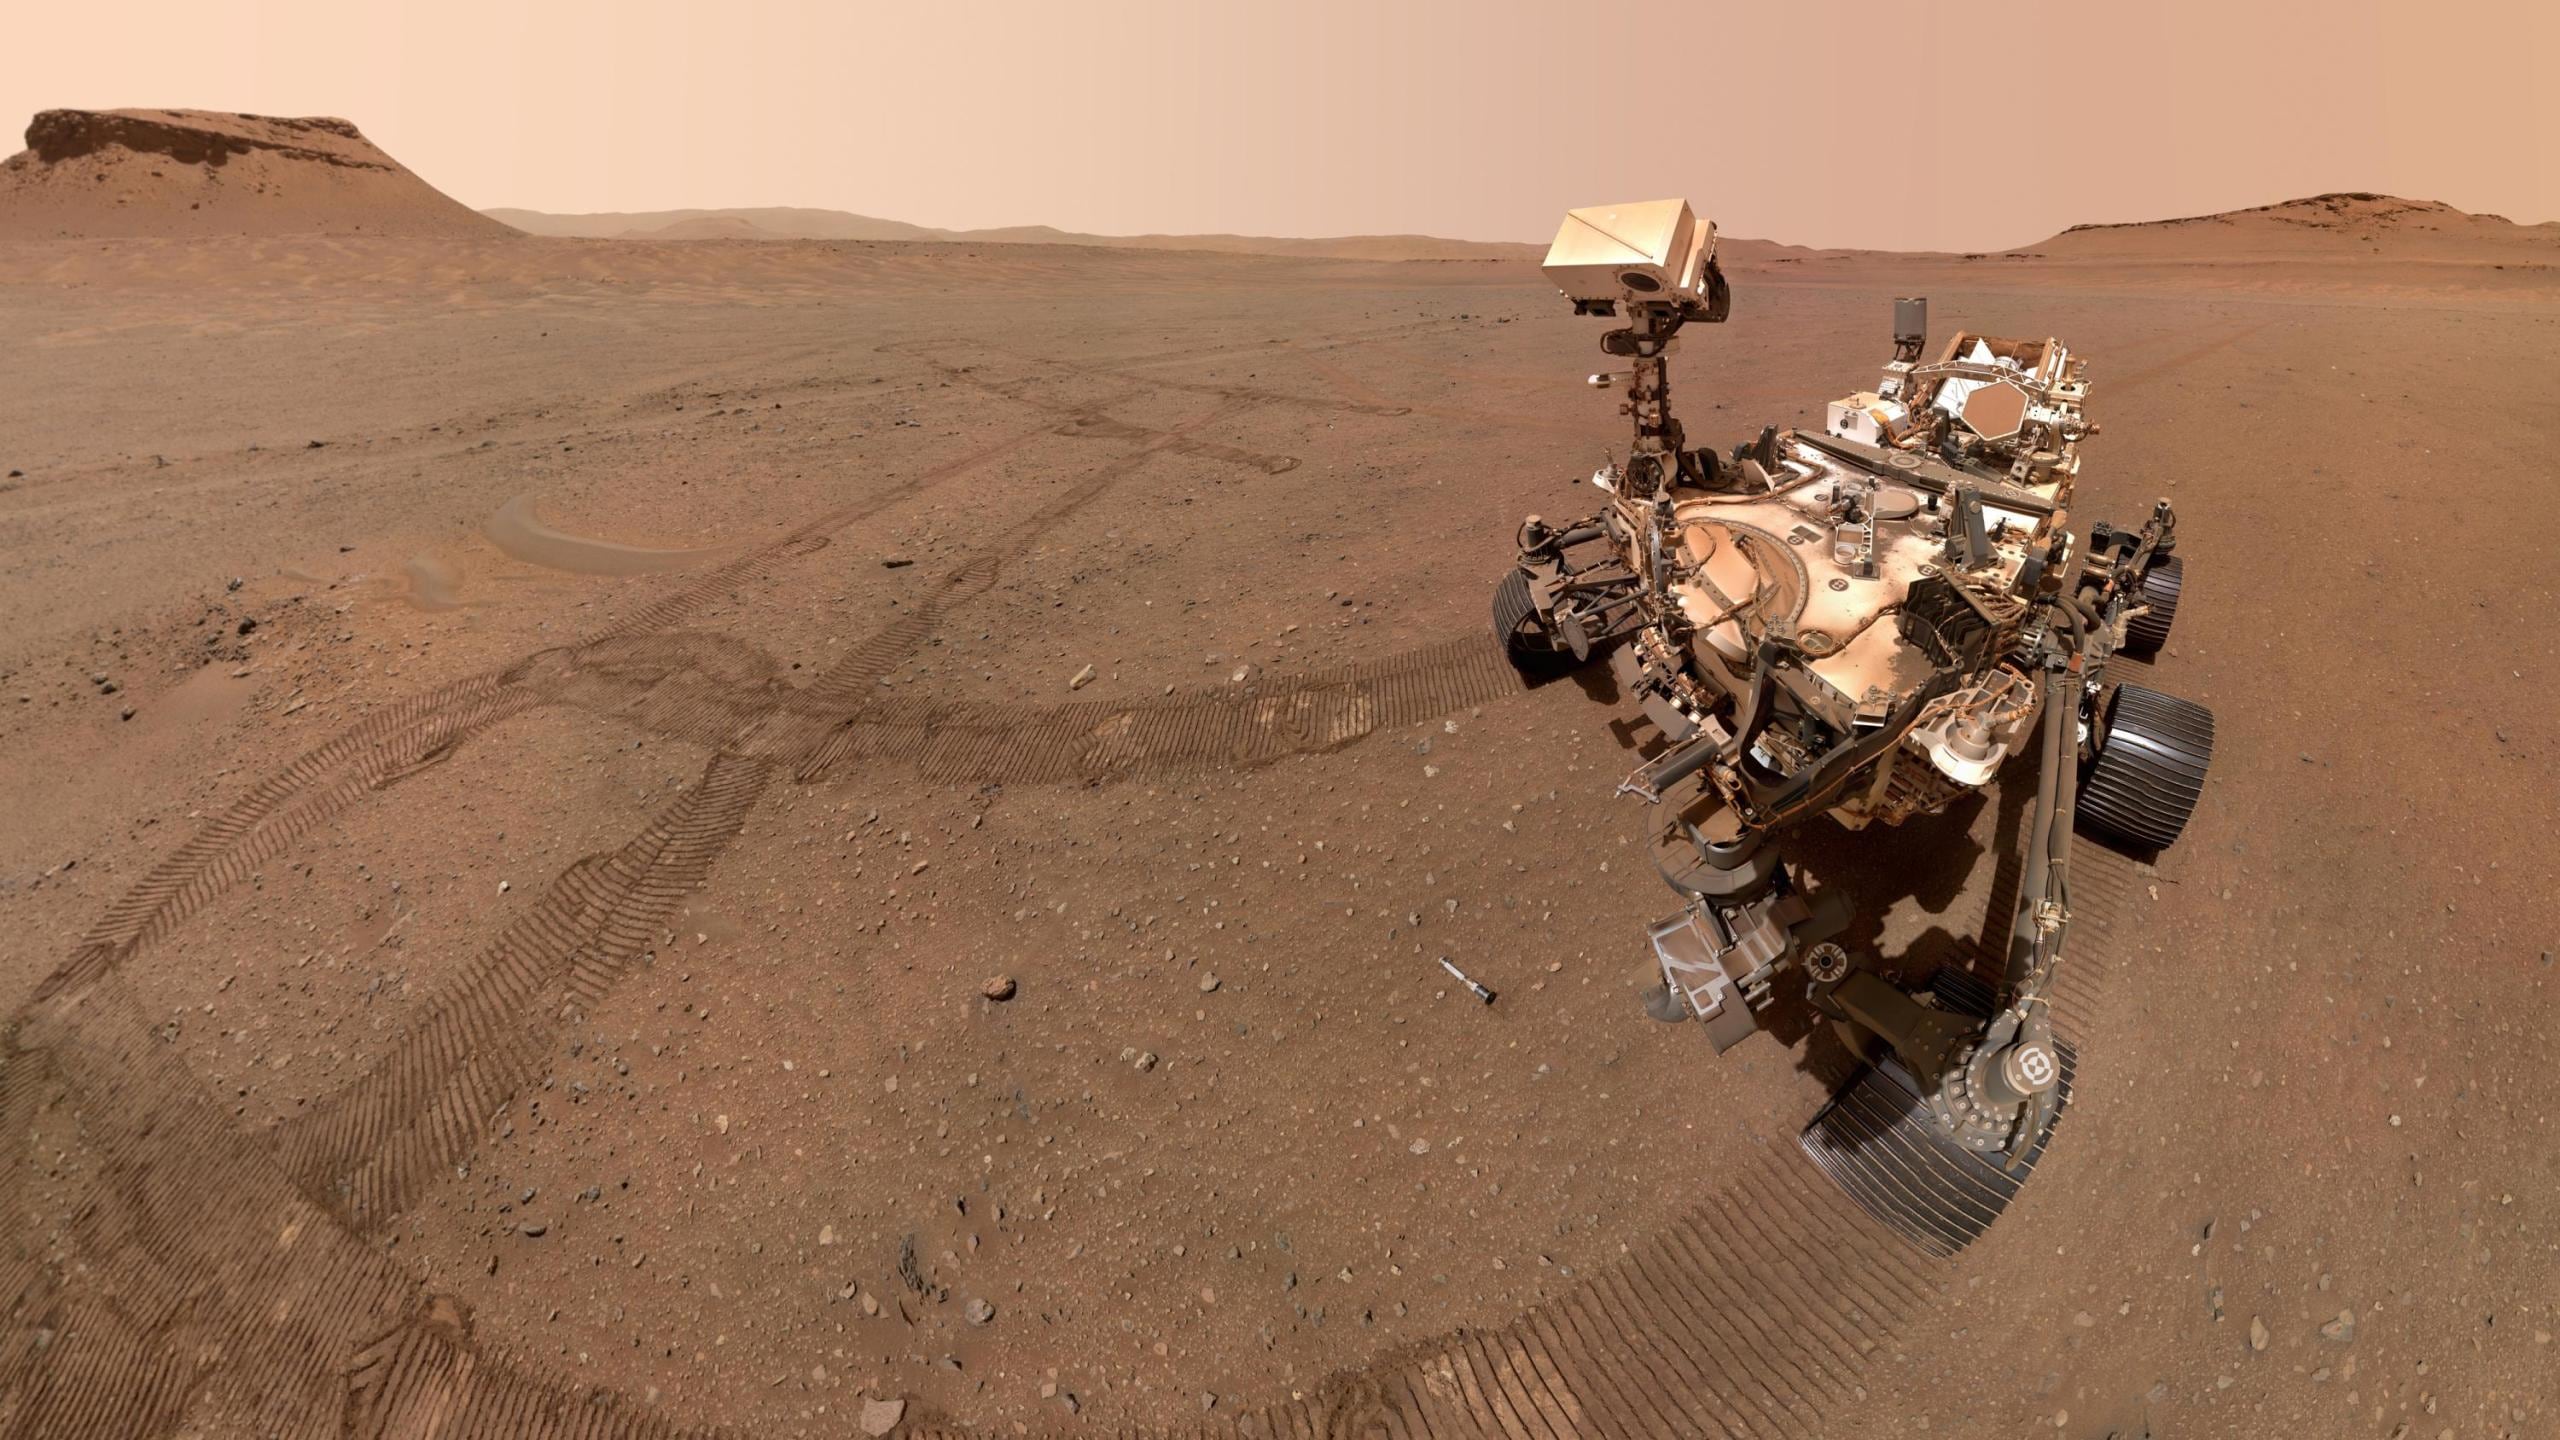 El rover Perseverance de la NASA se sacó esta selfie mirando hacia uno de los 10 tubos de muestras almacenados en el depósito que creó en un área apodada “Three Forks”. Crédito: NASA/JPL-Caltech/MSSS